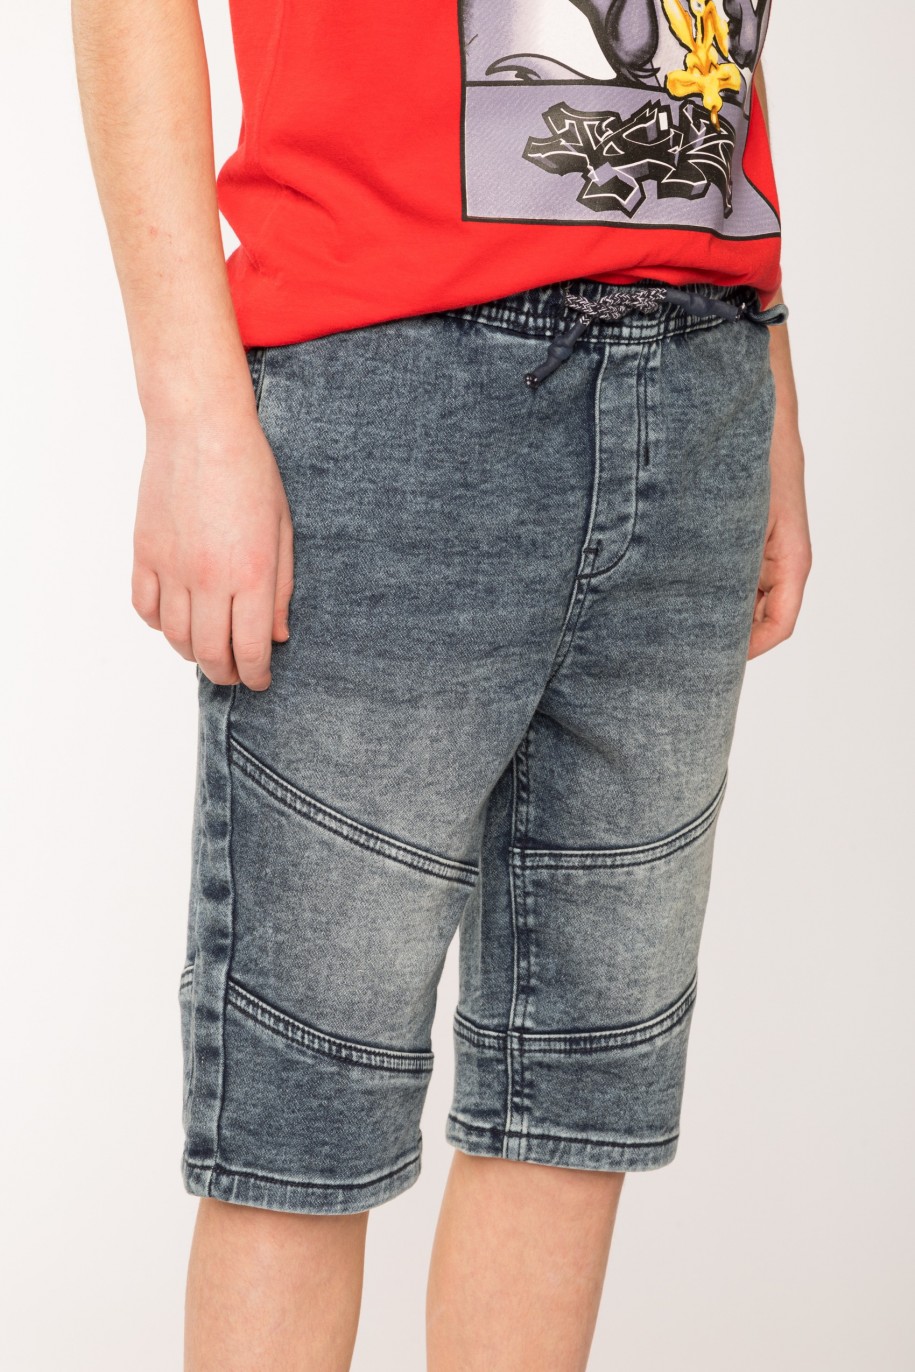 Jeansowe szorty dla chłopaka z ukośnymi przeszyciami na nogawkach - 27201